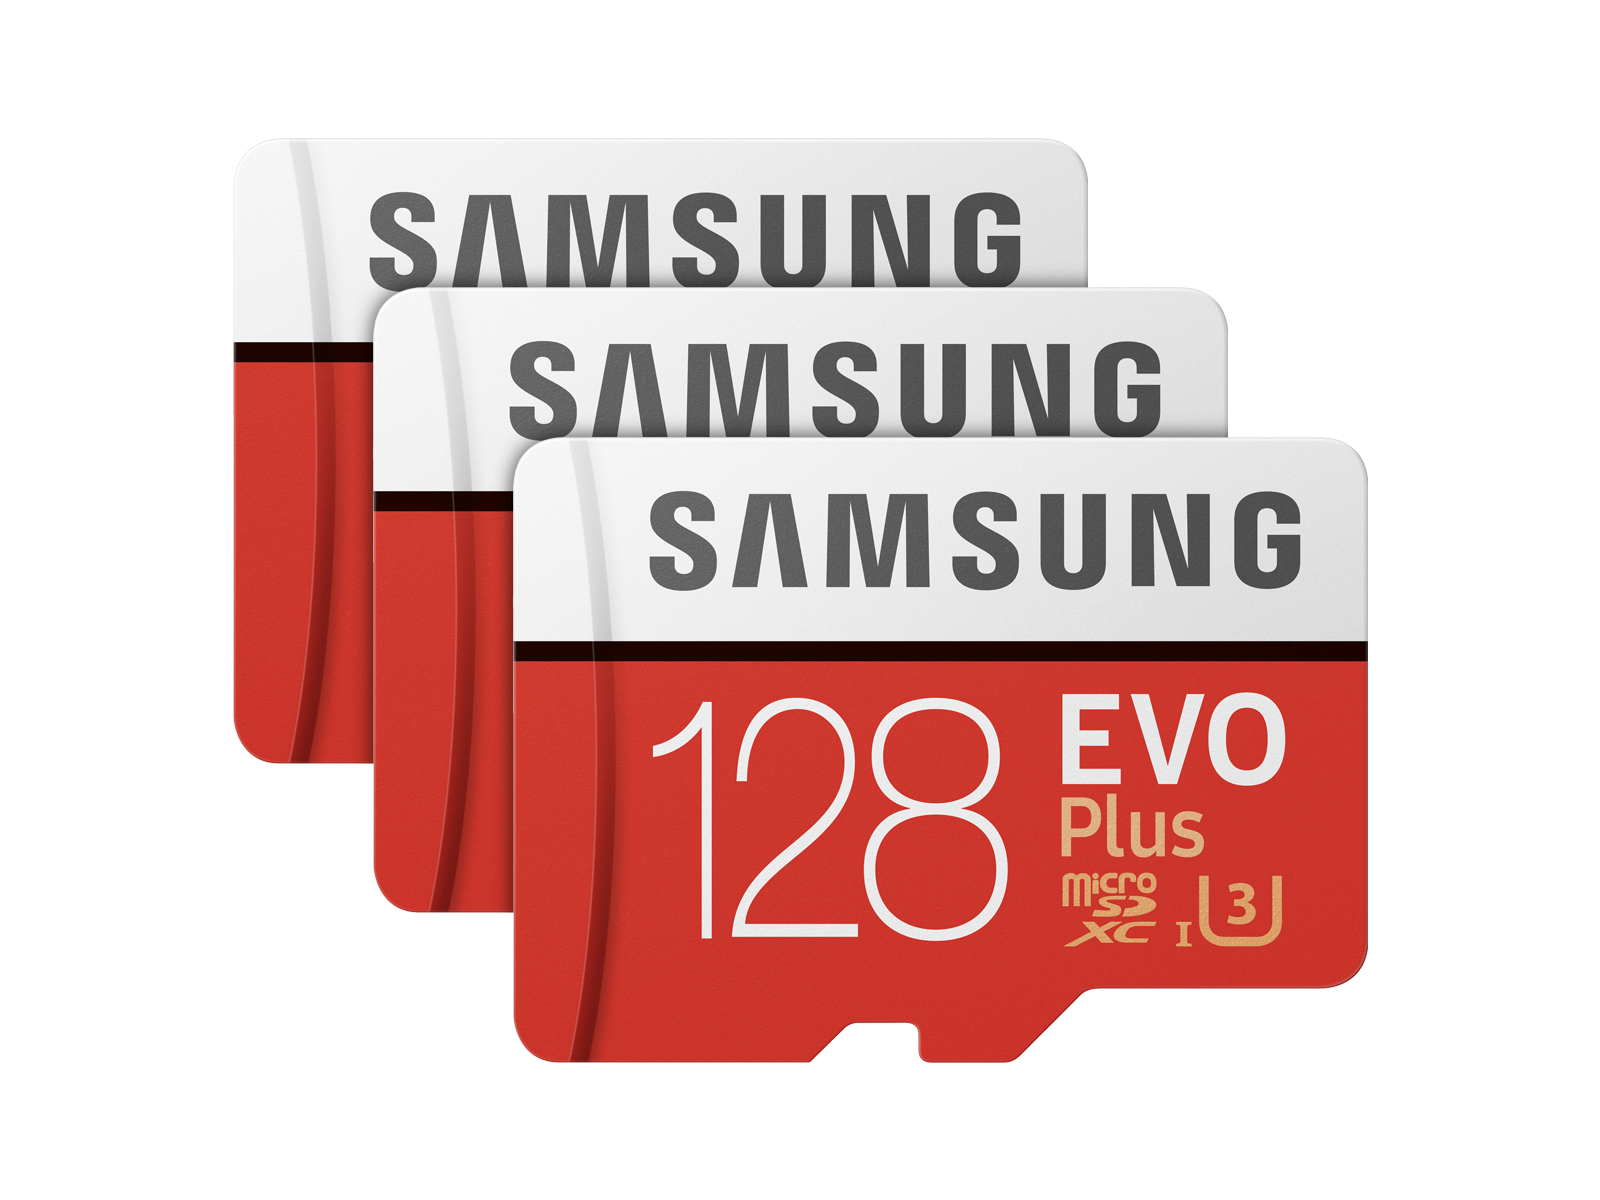 EVO Plus microSDXC Memory Card 128GB - 3 Pack